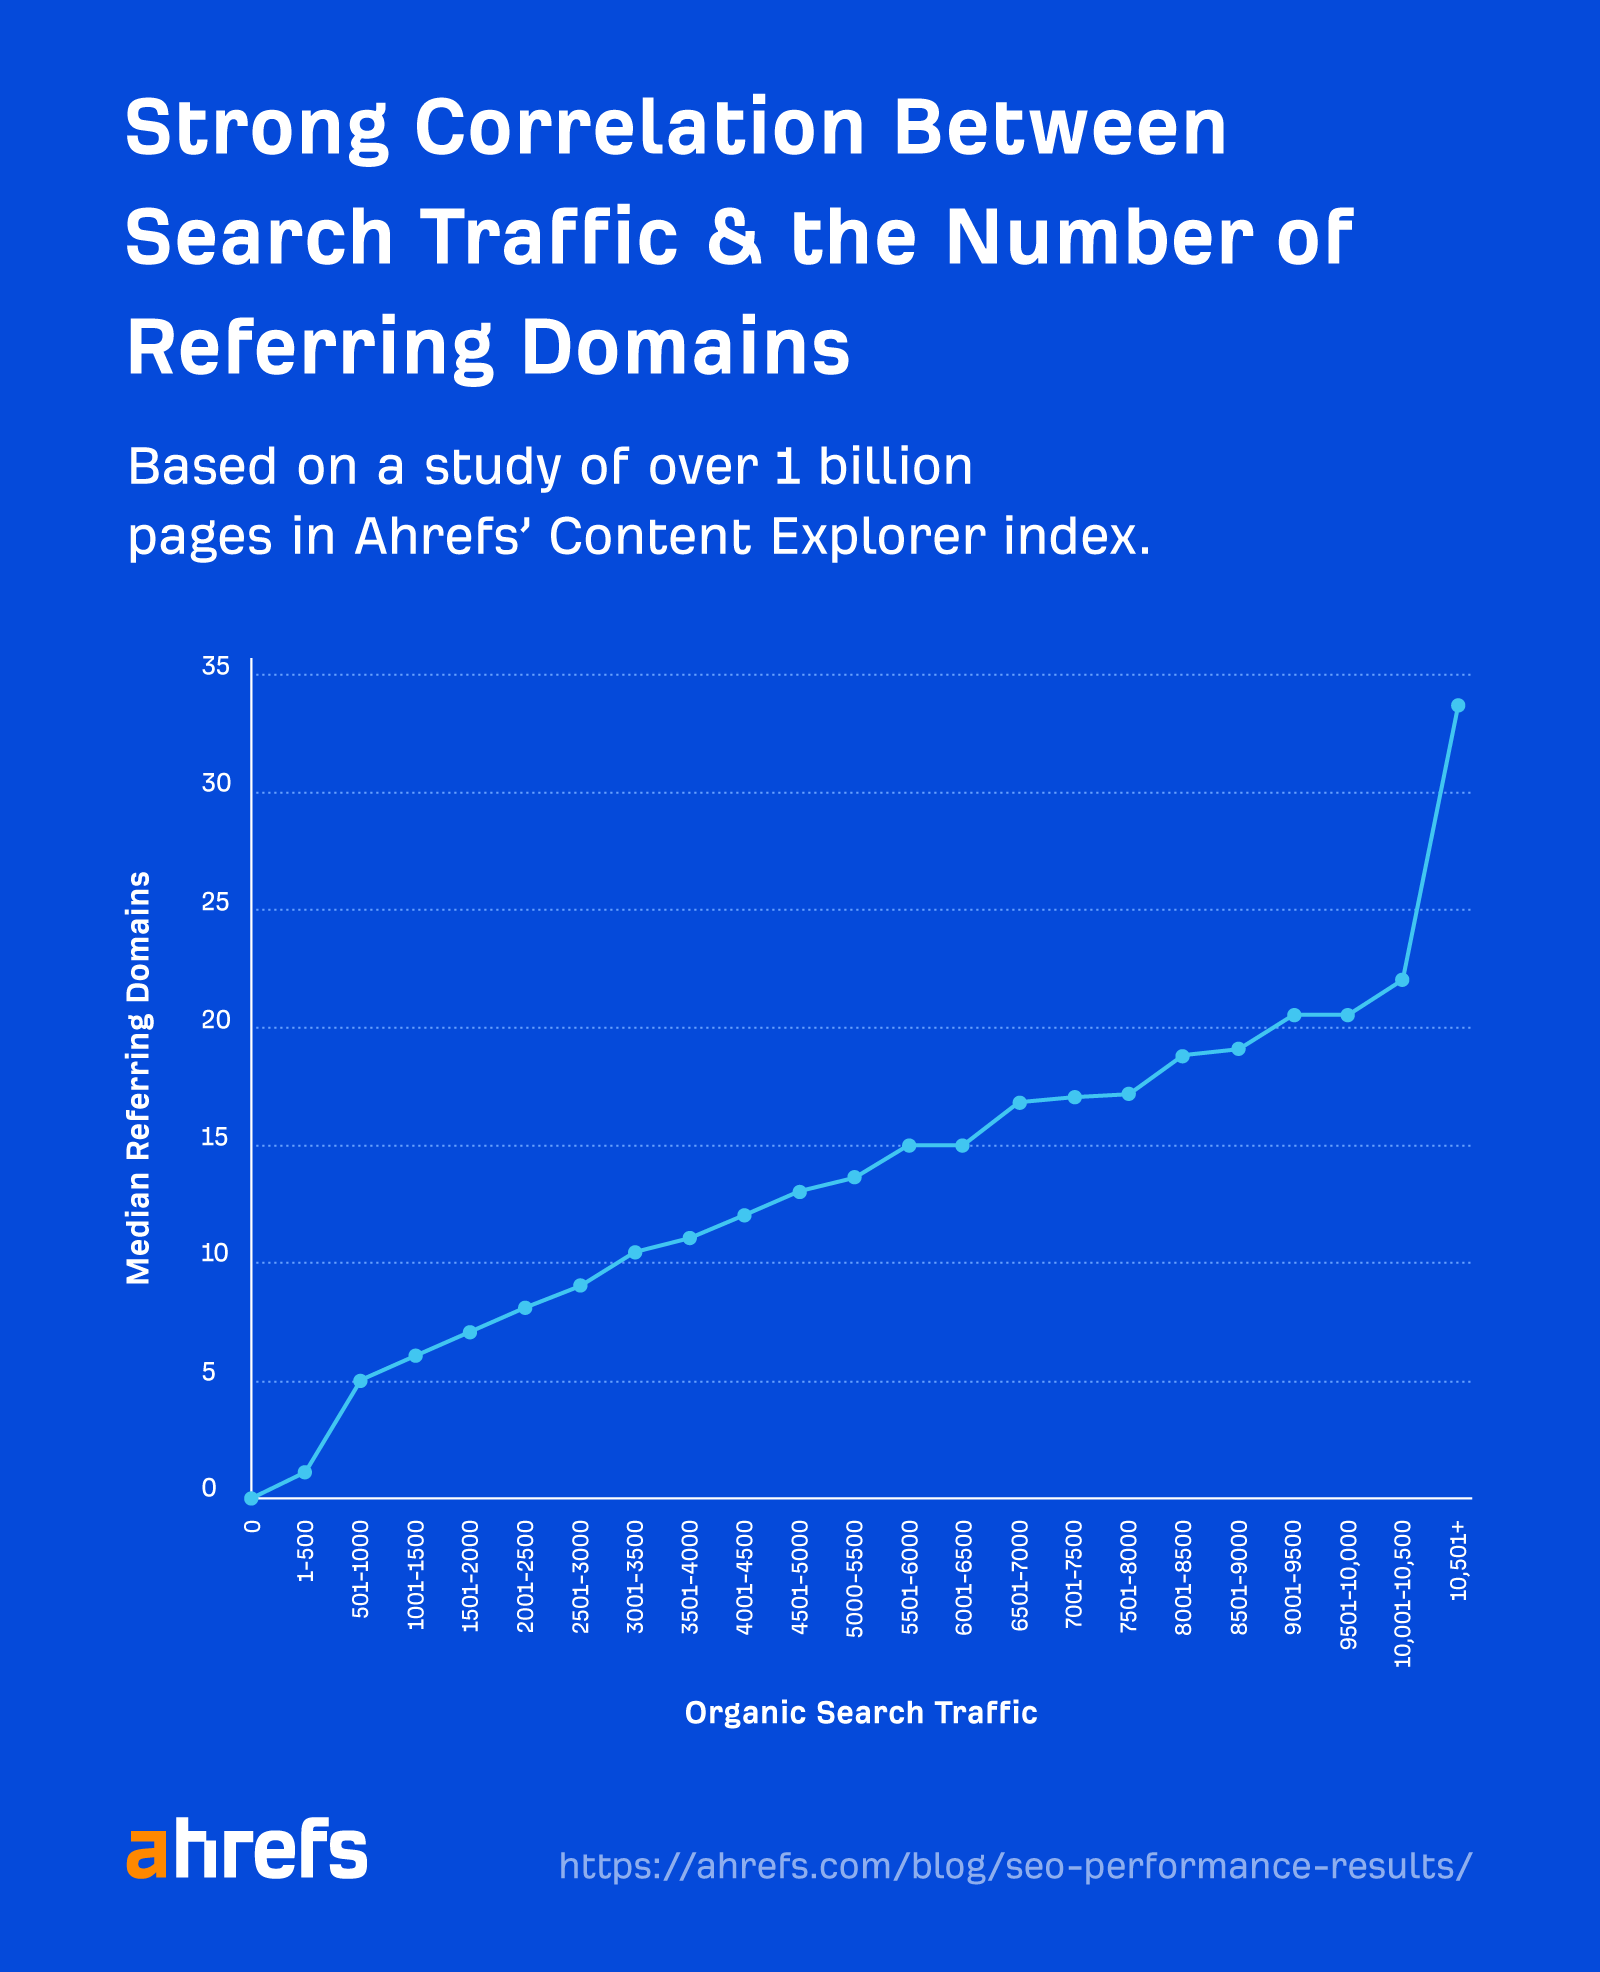 نمودار خطی که همبستگی قوی بین ترافیک جستجو و تعداد دامنه های ارجاع دهنده را نشان می دهد